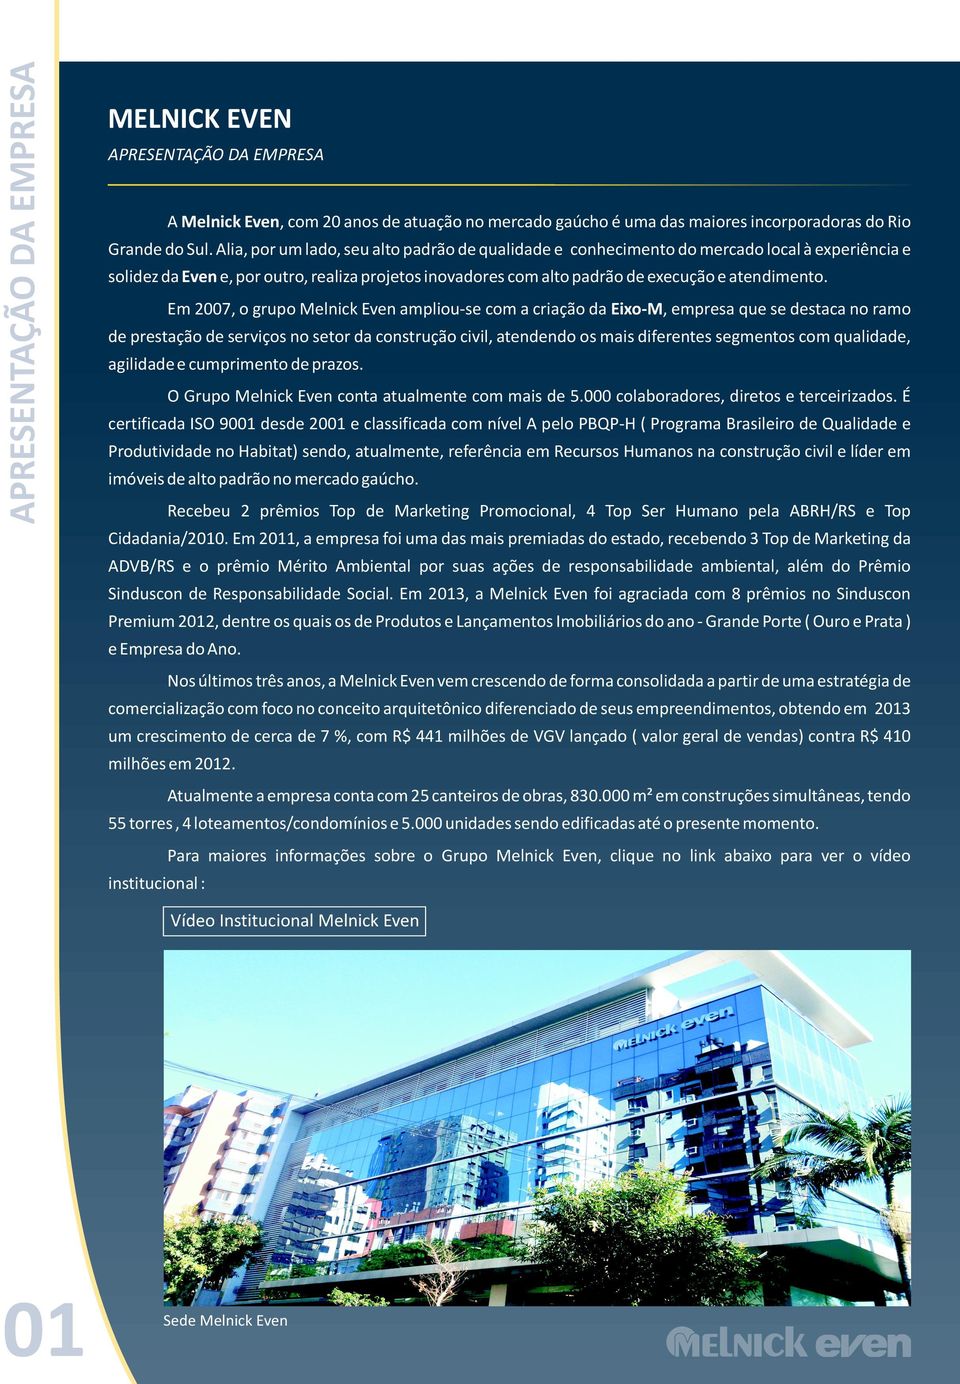 Em 2007, o grupo Melnick Even ampliou-se com a criação da Eixo-M, empresa que se destaca no ramo de prestação de serviços no setor da construção civil, atendendo os mais diferentes segmentos com